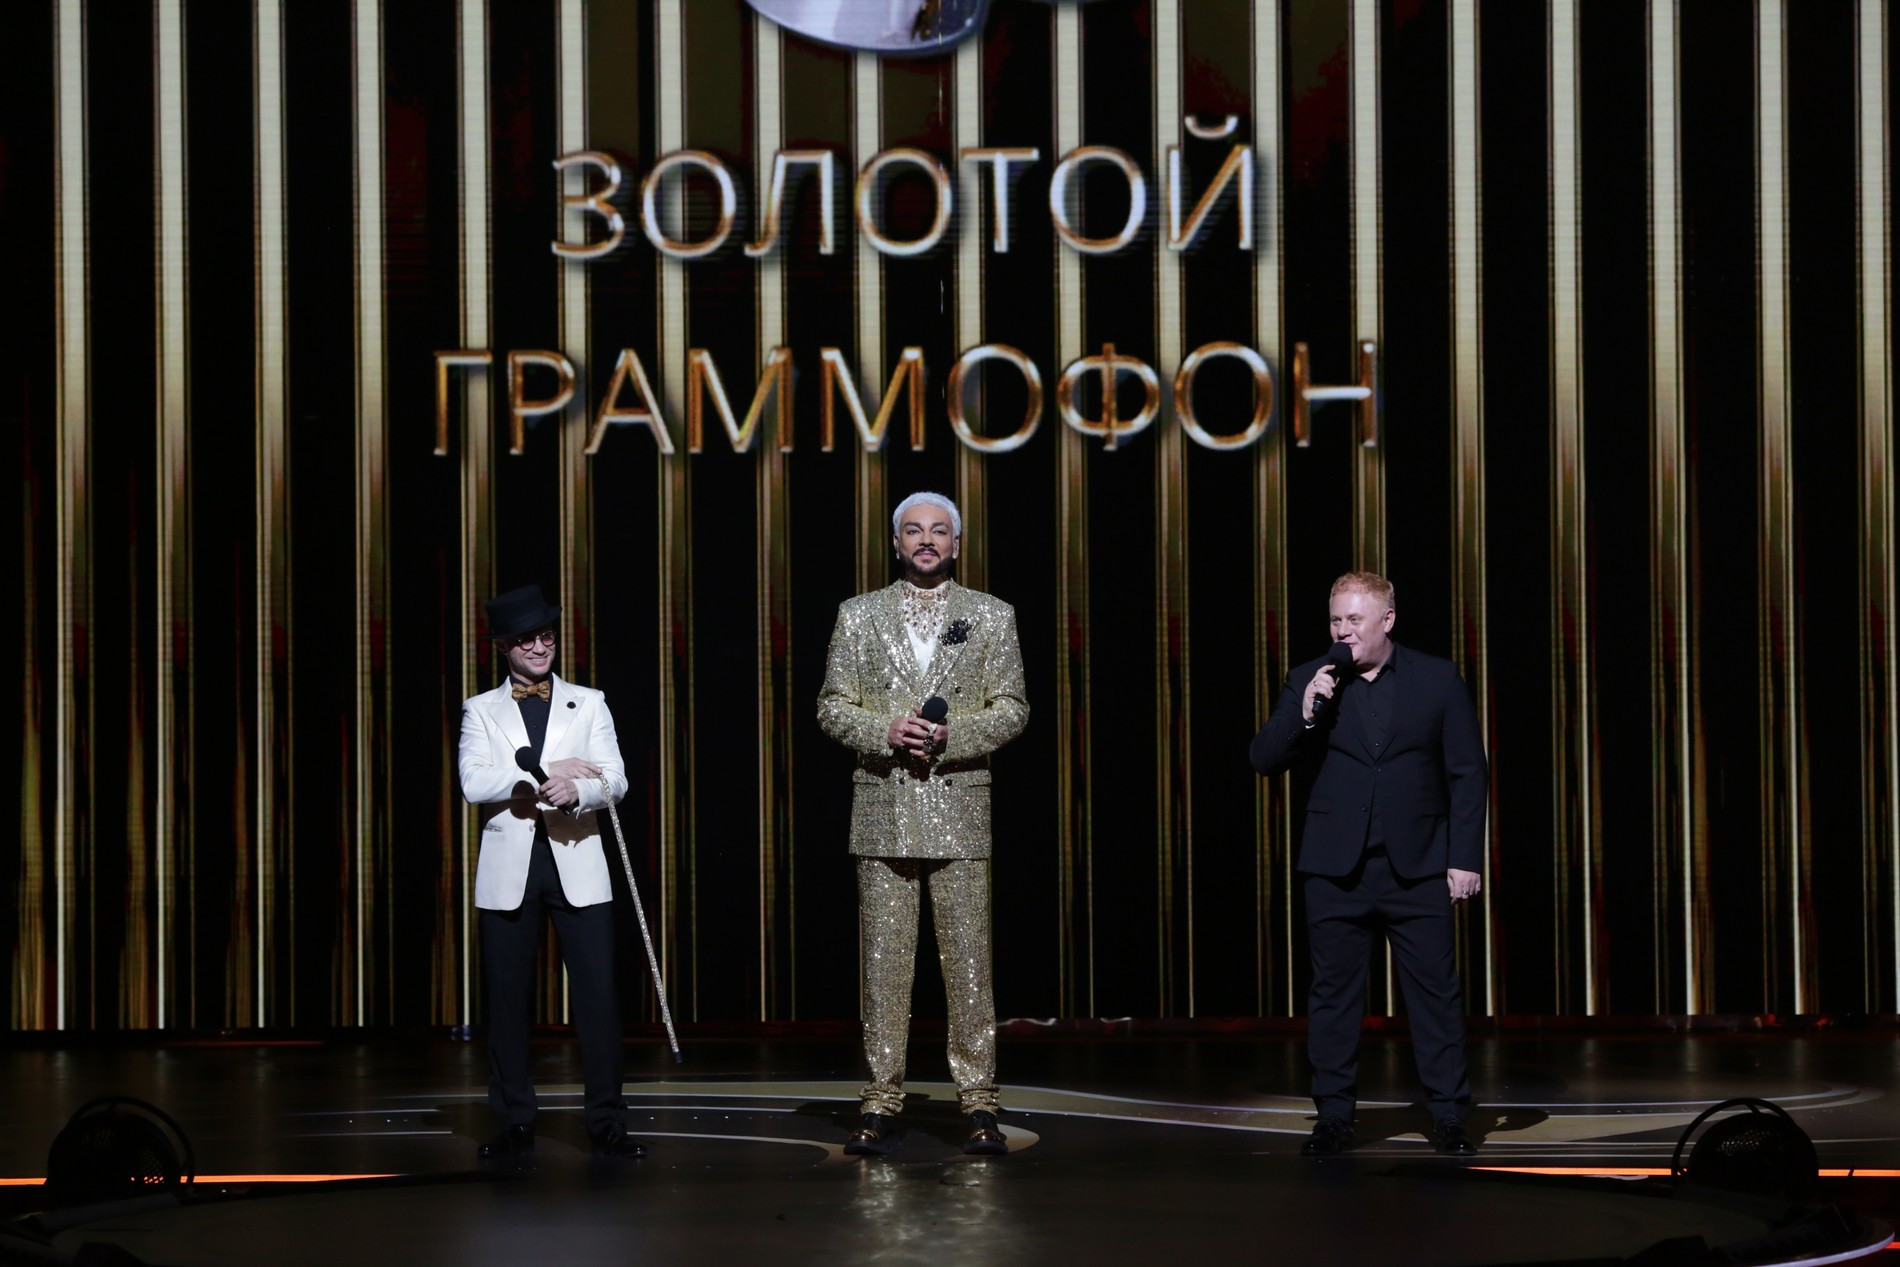 Дмитрий Хрусталев, Филипп Киркоров и Антон Юрьев. Фото: пресс-служба